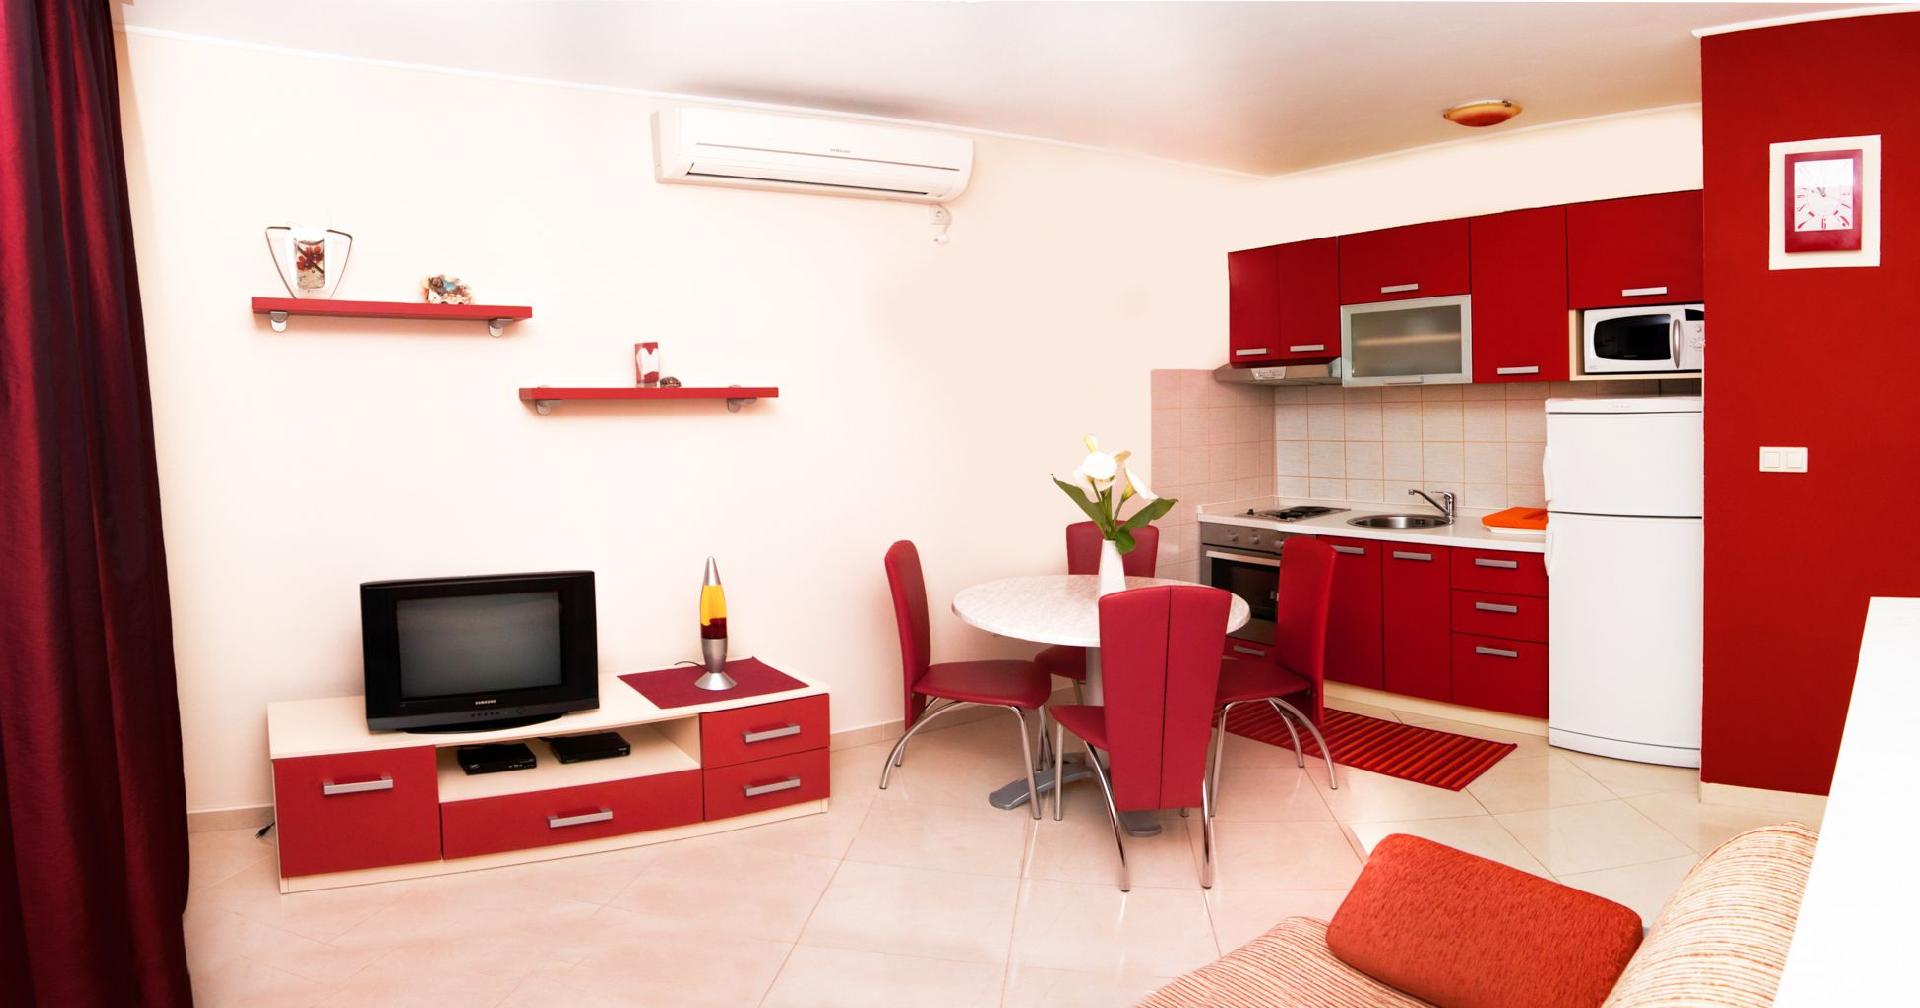 Ferienwohnung für 6 Personen ca. 52 m² i Ferienwohnung in Dalmatien